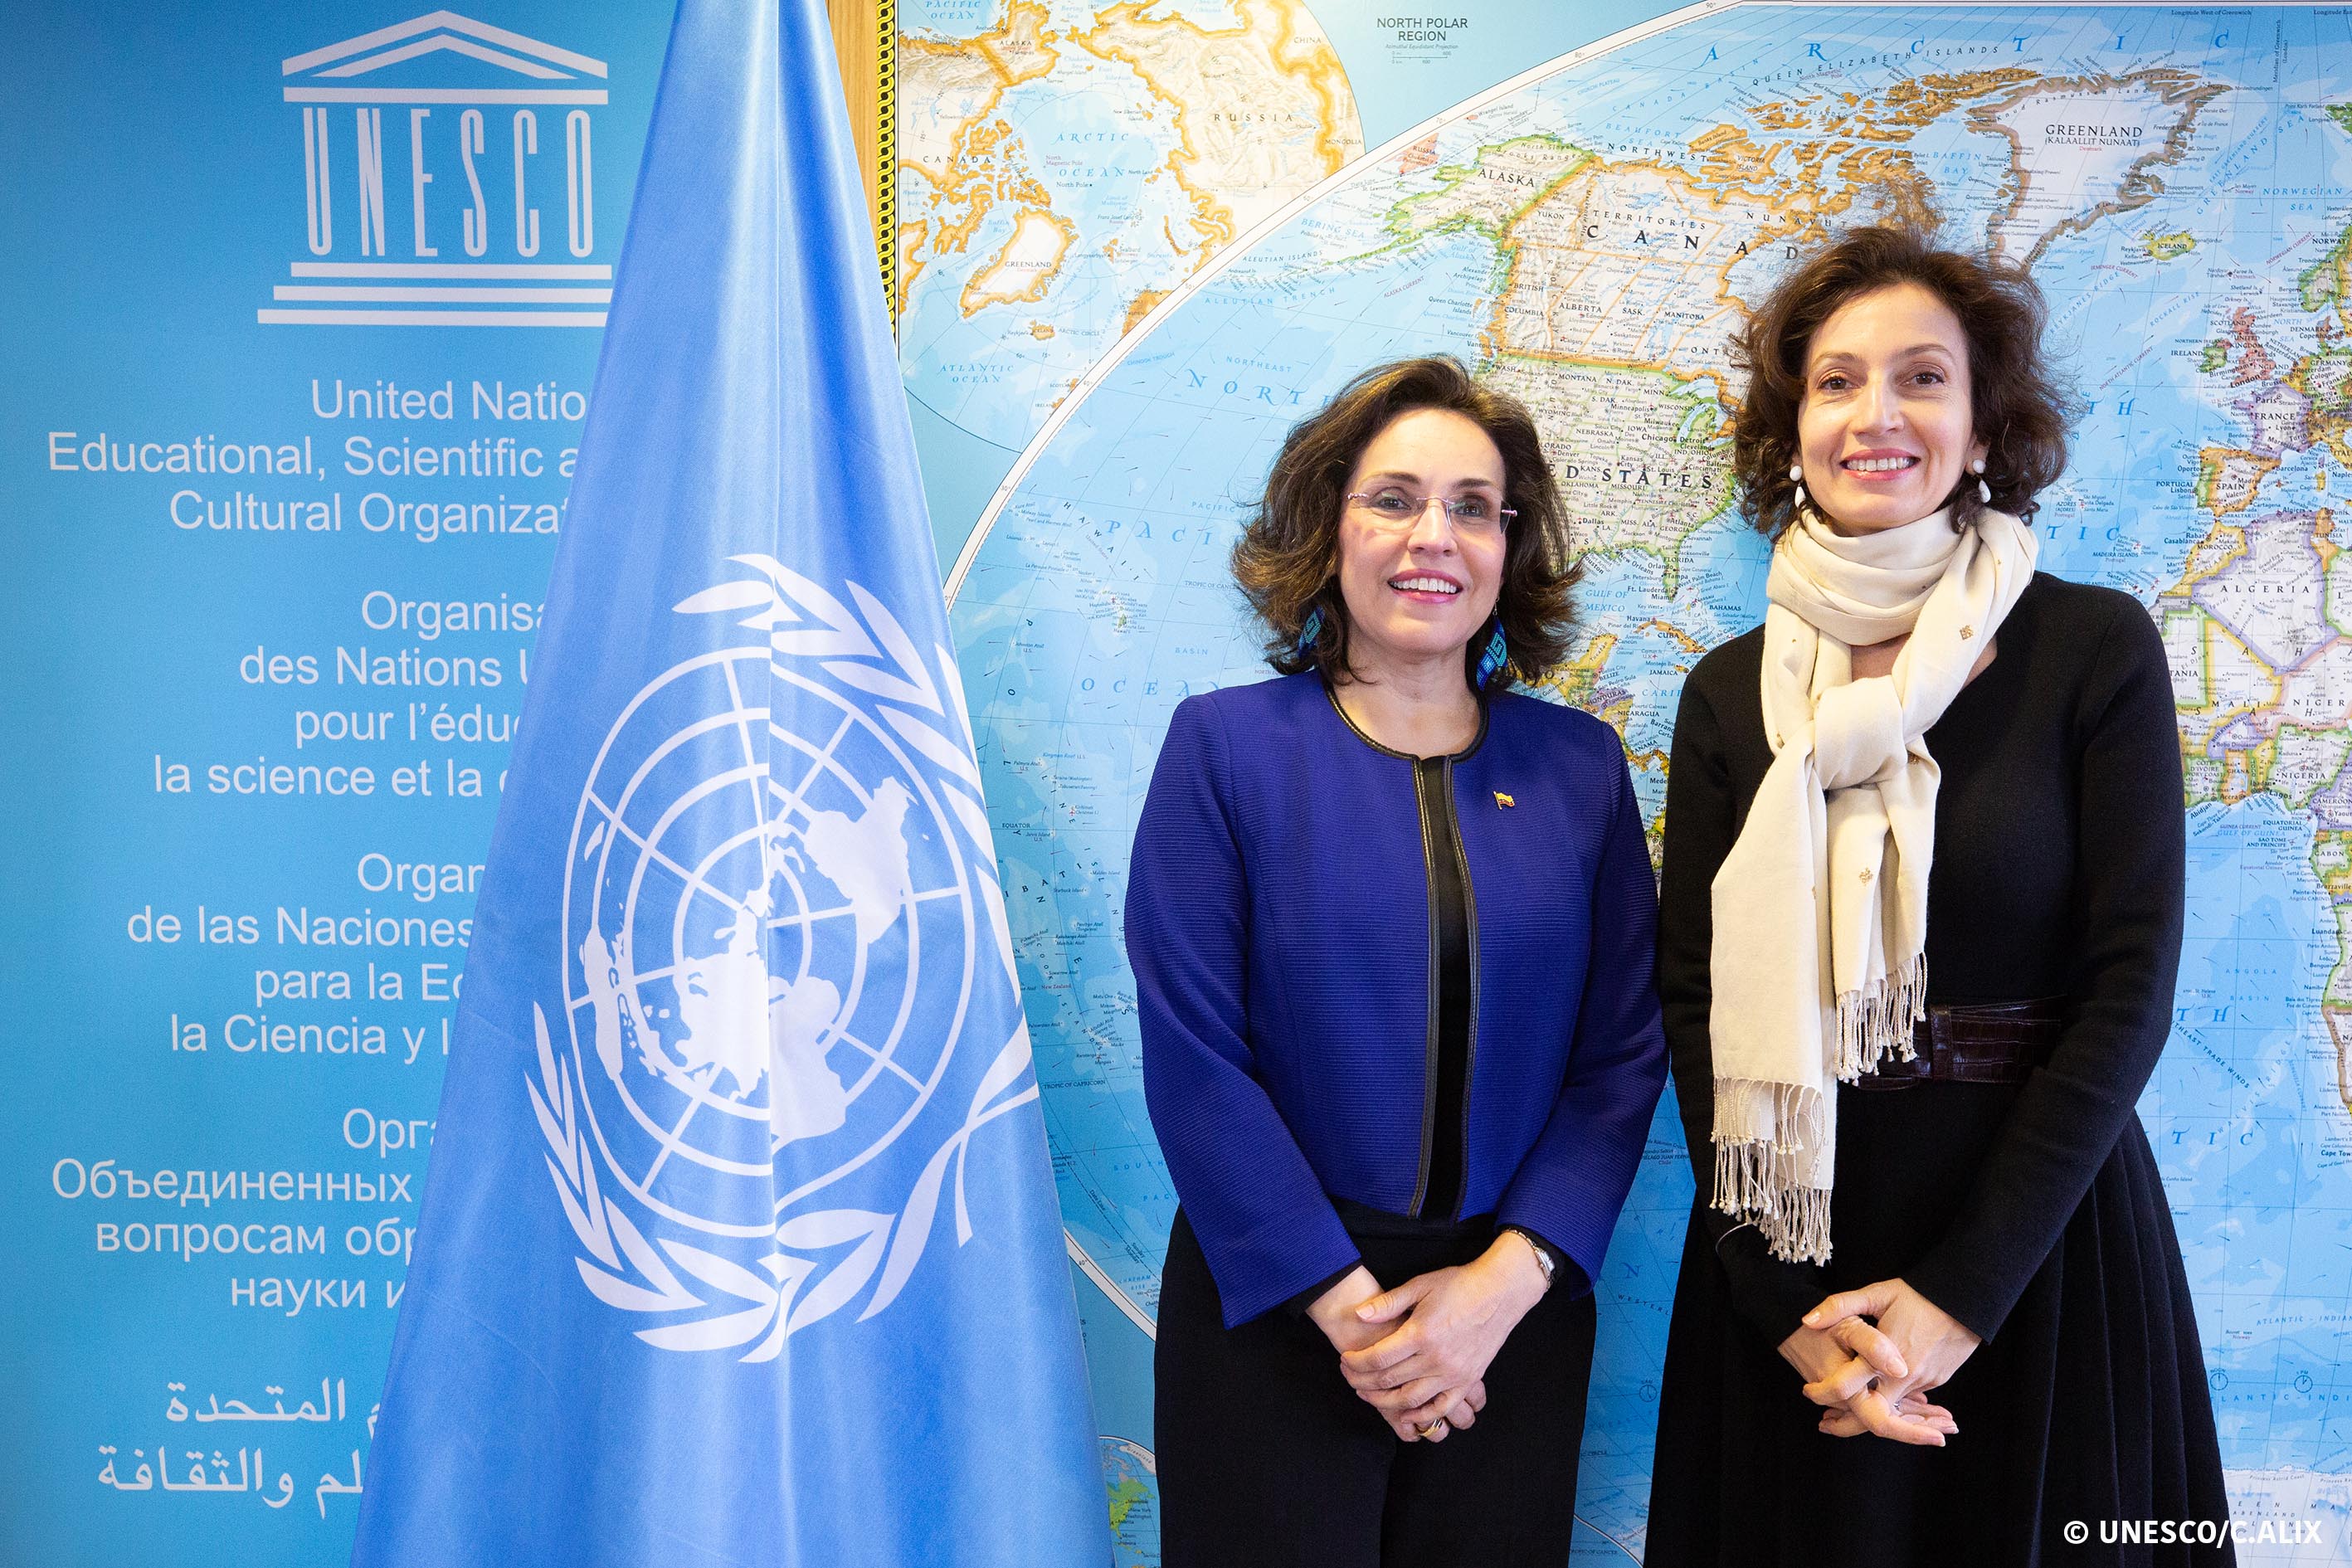 Embajadora de Colombia en Francia, Viviane Morales Hoyos, presentó credenciales ante la Directora General de Unesco